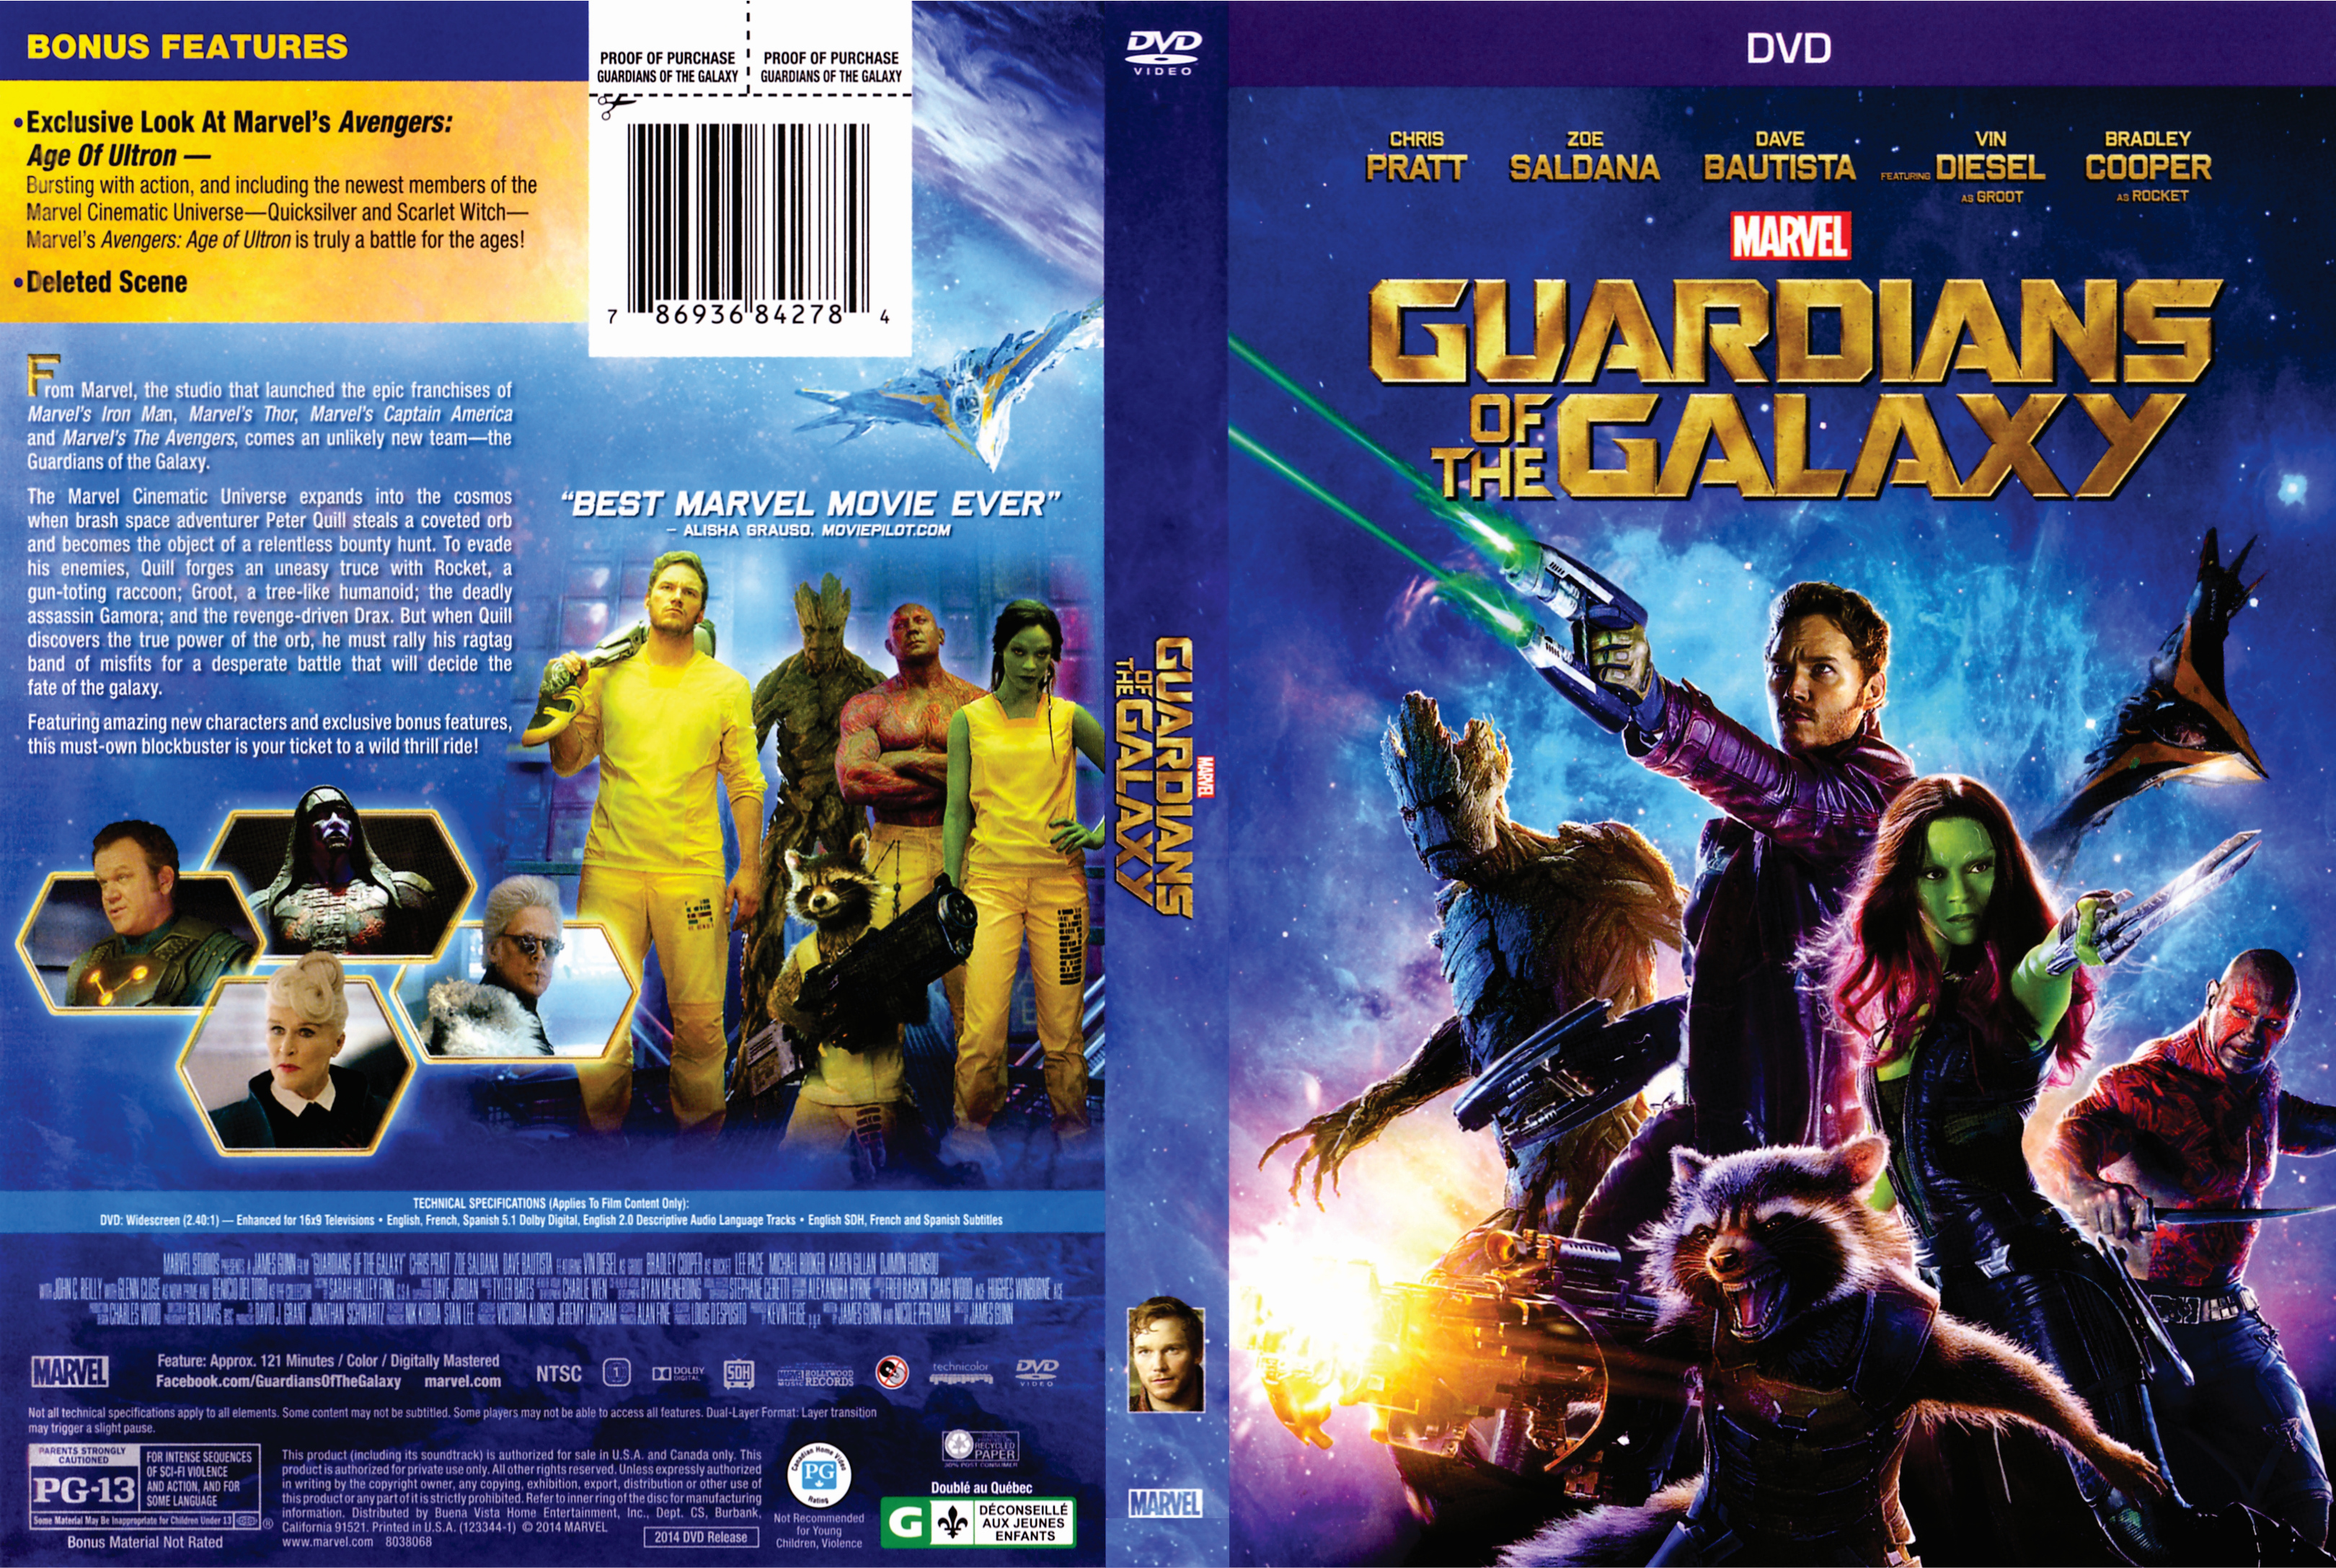 Jaquette DVD Guardians of the galaxy - Les gardiens de la galaxie (Canadienne)